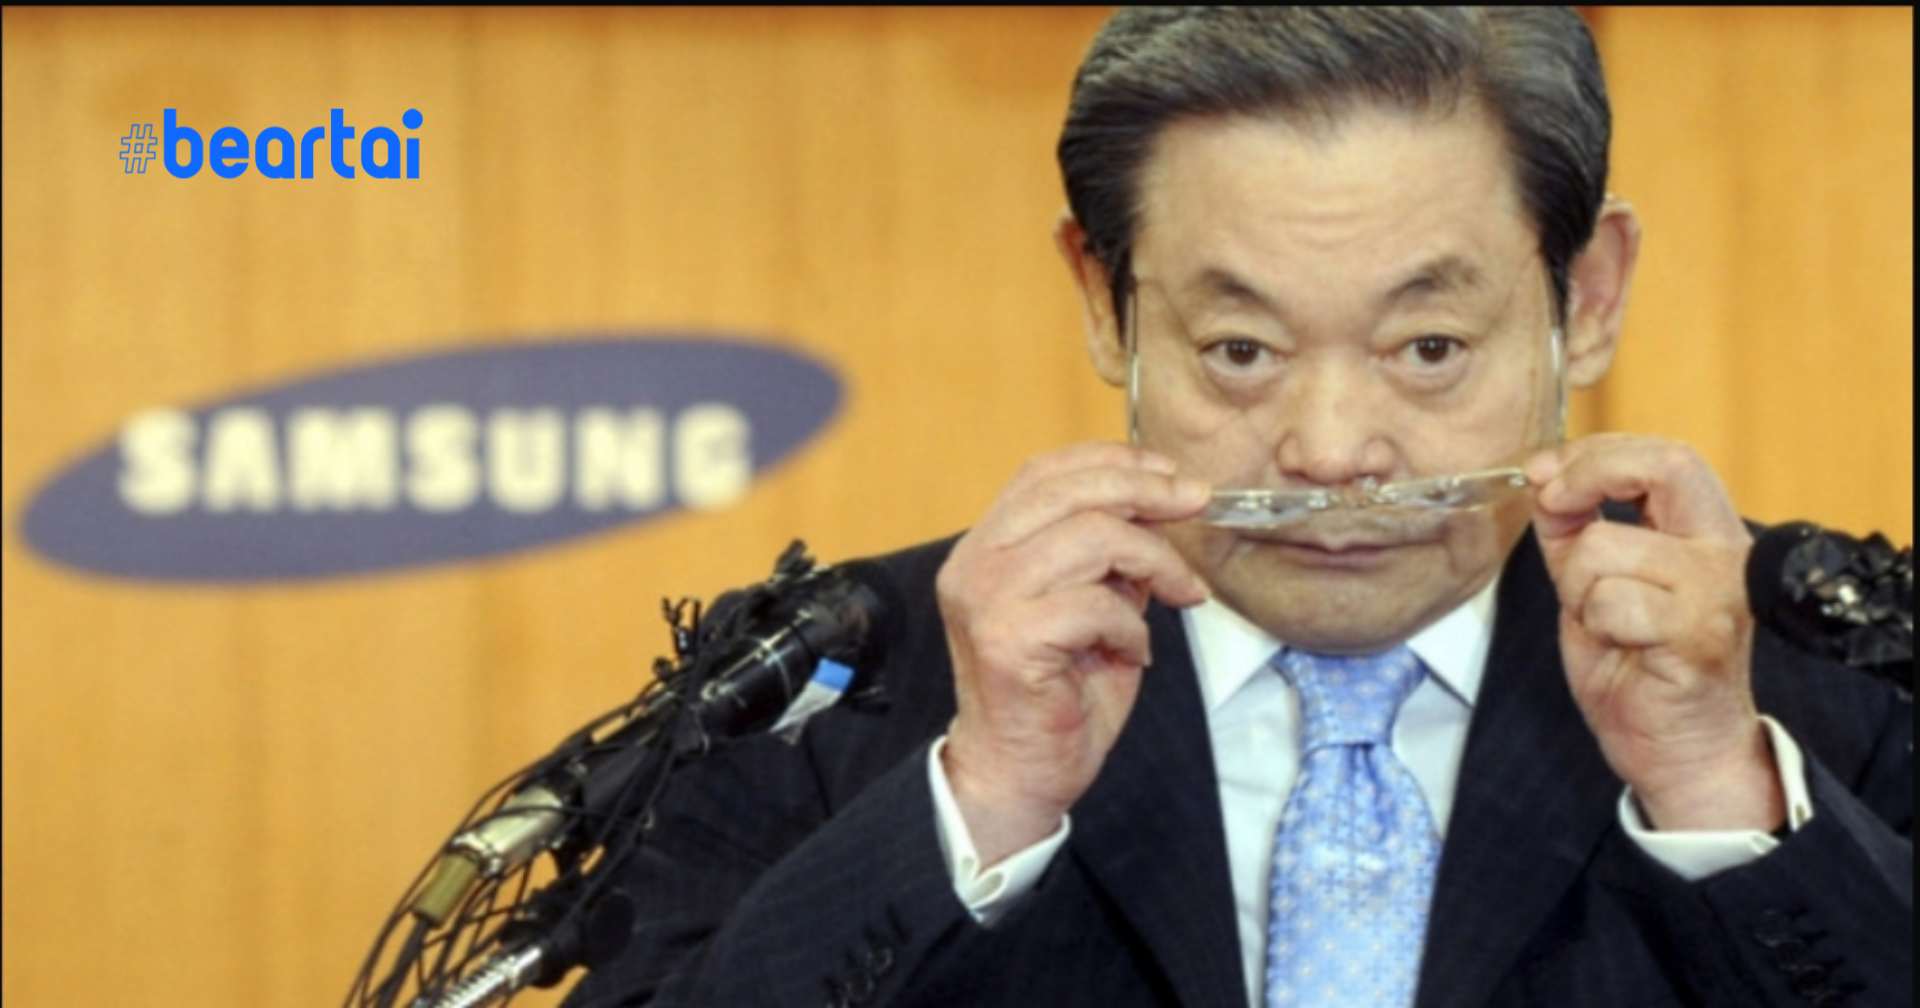 เปิดตำนาน Lee Kun Hee ประธาน Samsung ผู้ล่วงลับ